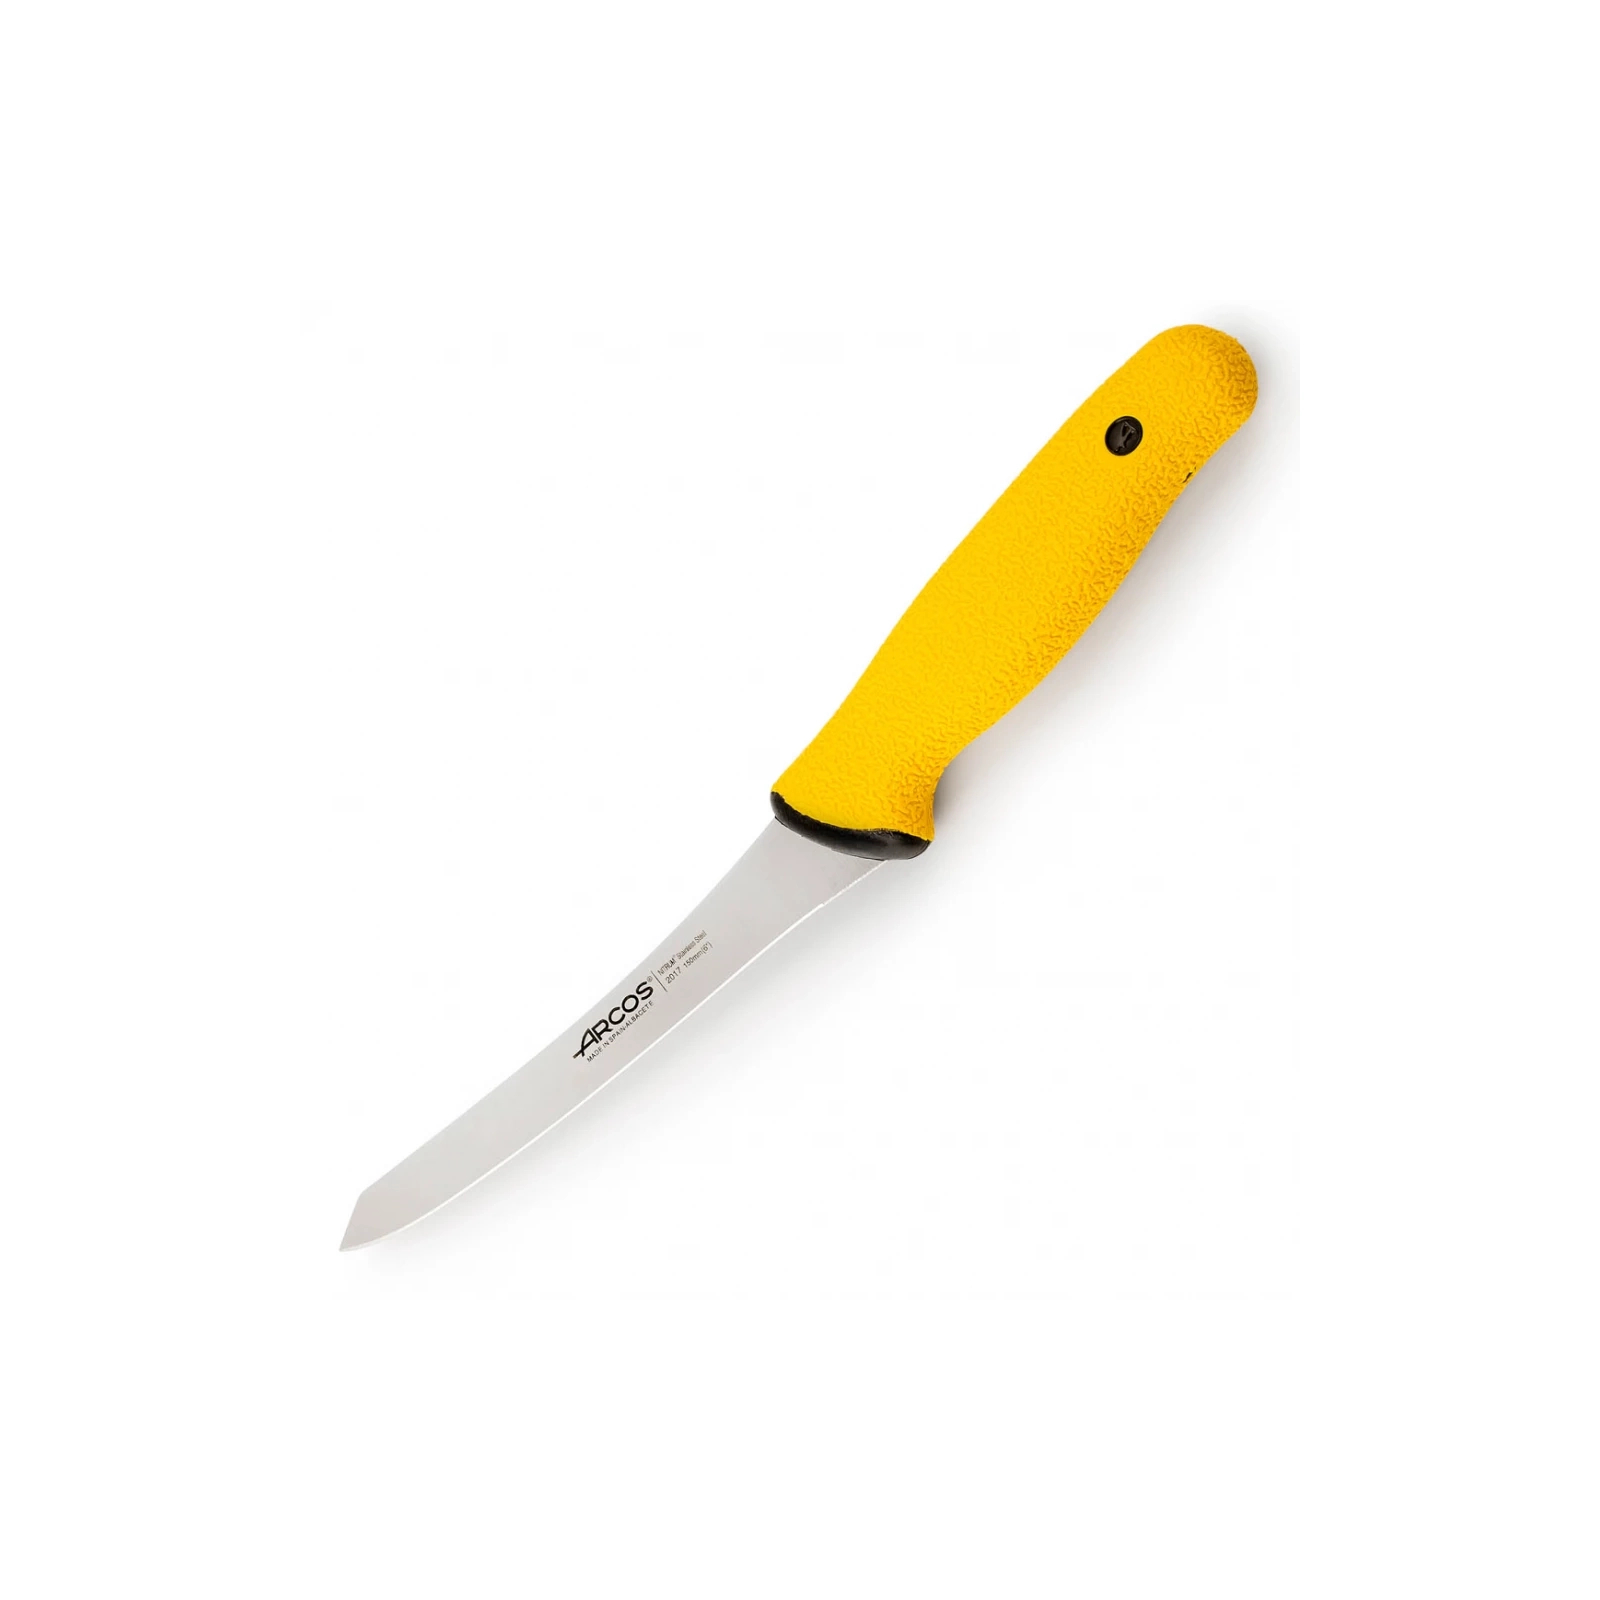 Кухонный нож Arcos Duo Pro обвалювальний 130 мм зі скошеним лезом (201100)